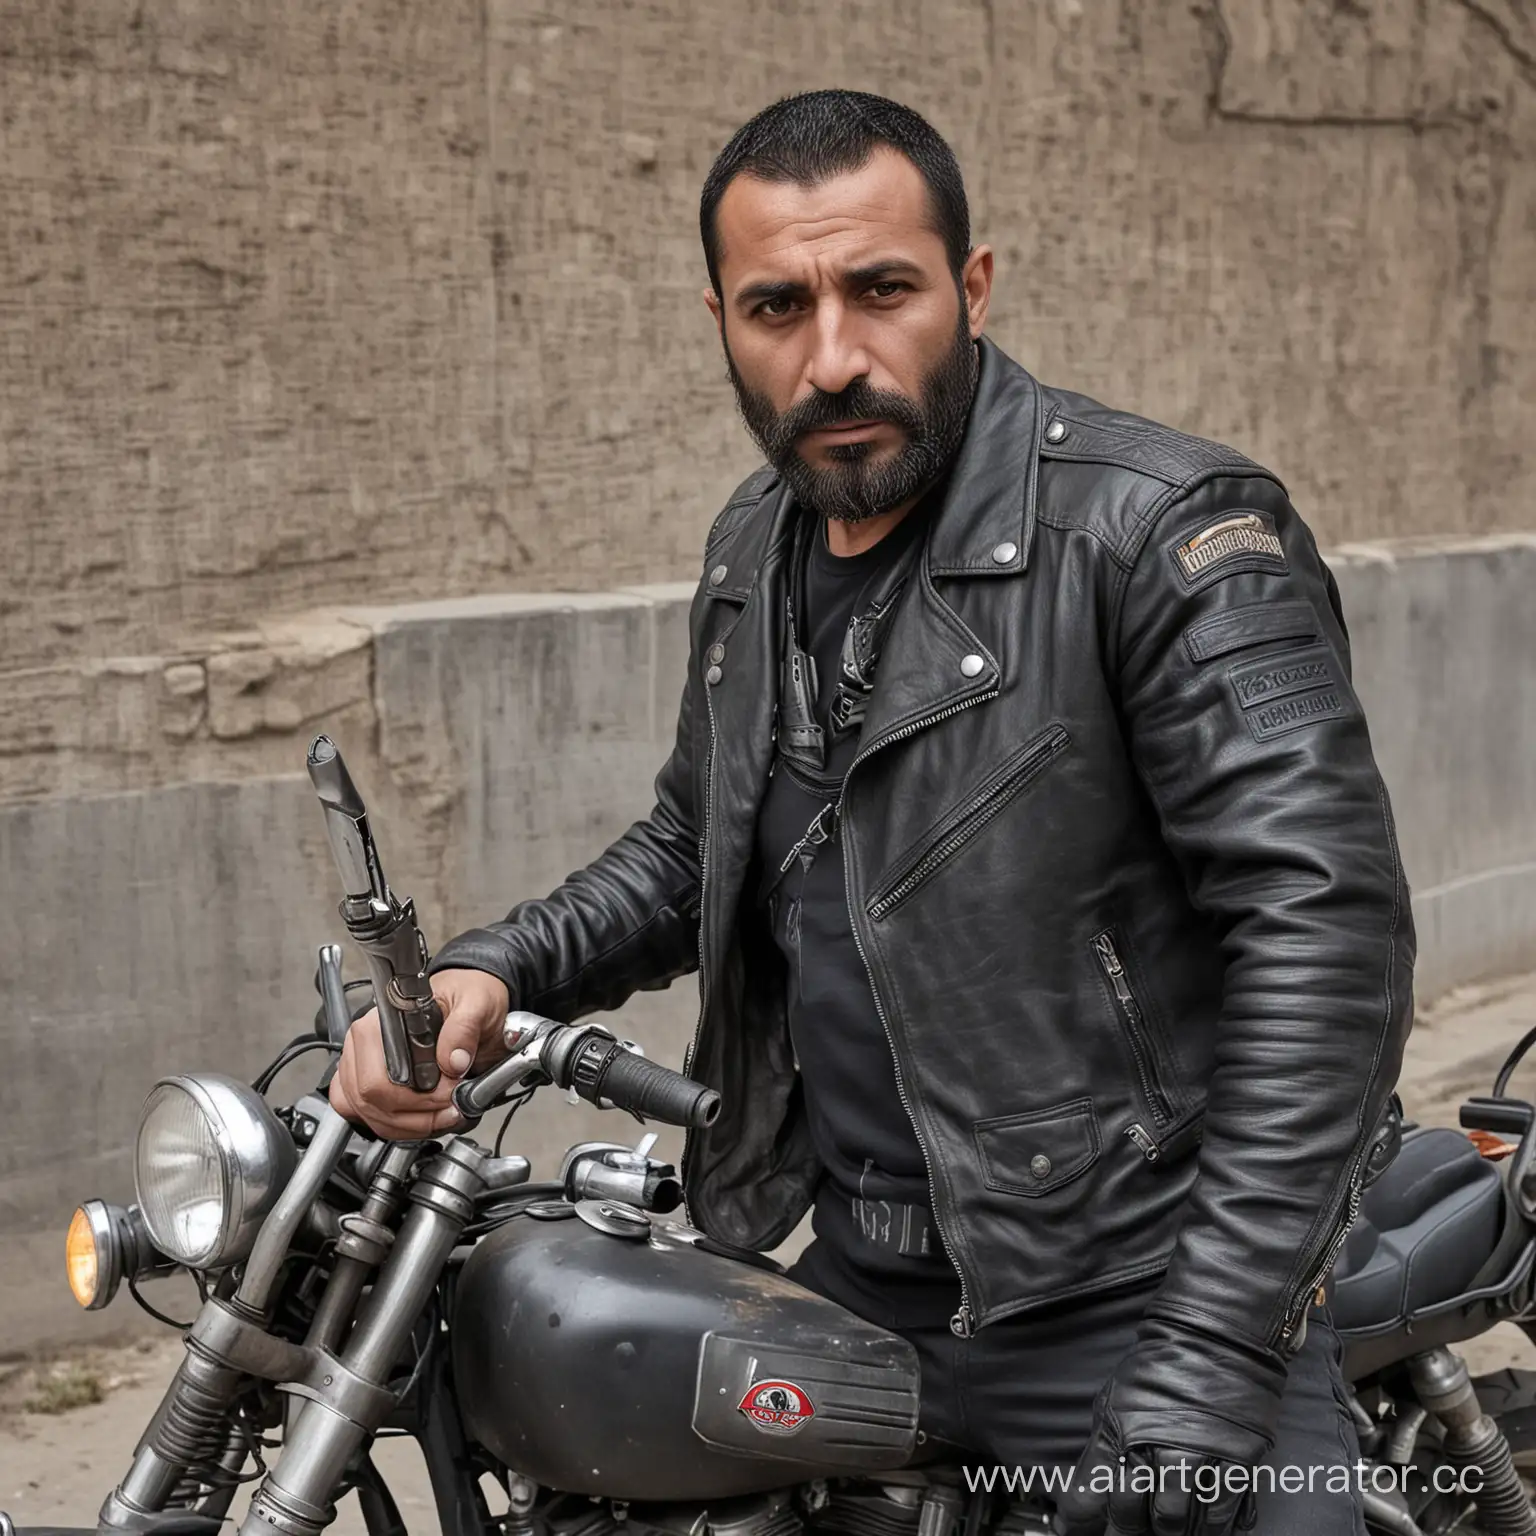 Байкер армянин, 40 лет ,с сигаретой и оружием 